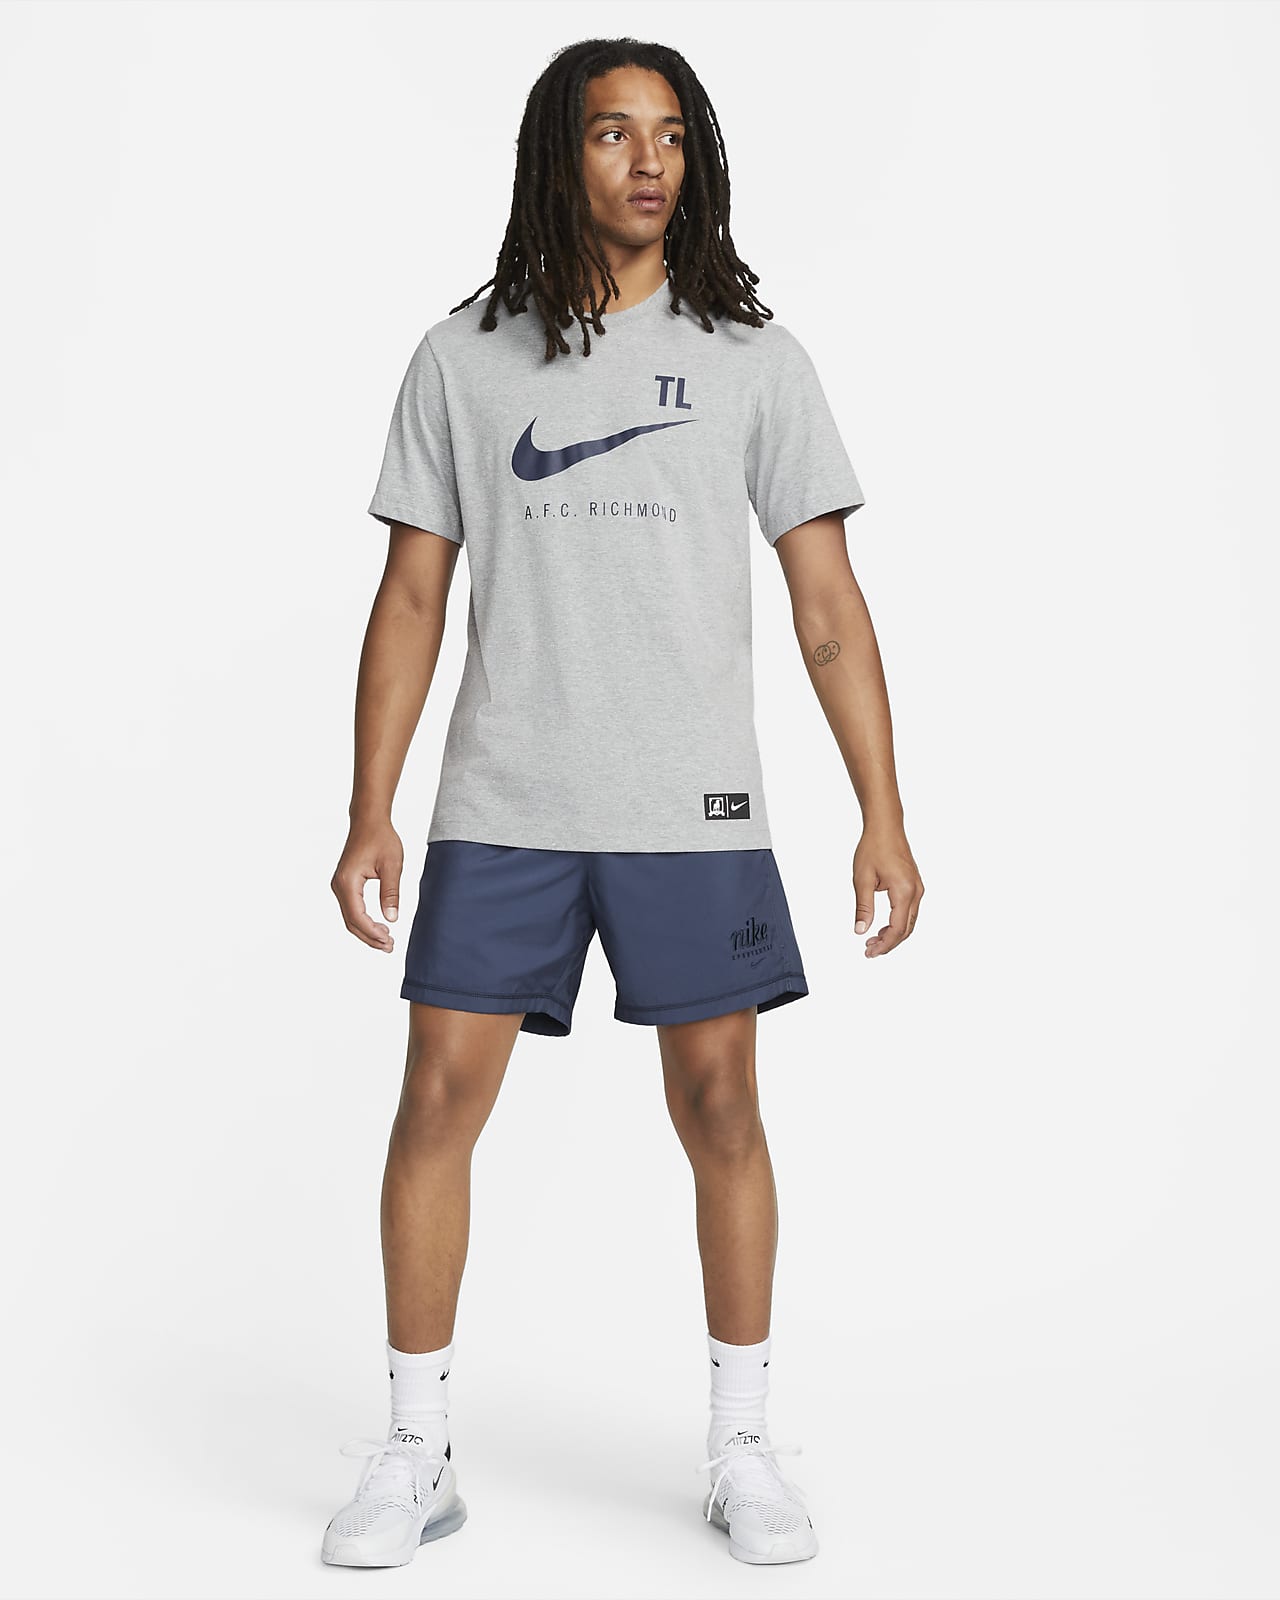 prefacio Desviación Brillar AFC Richmond Men's Nike T-Shirt. Nike.com